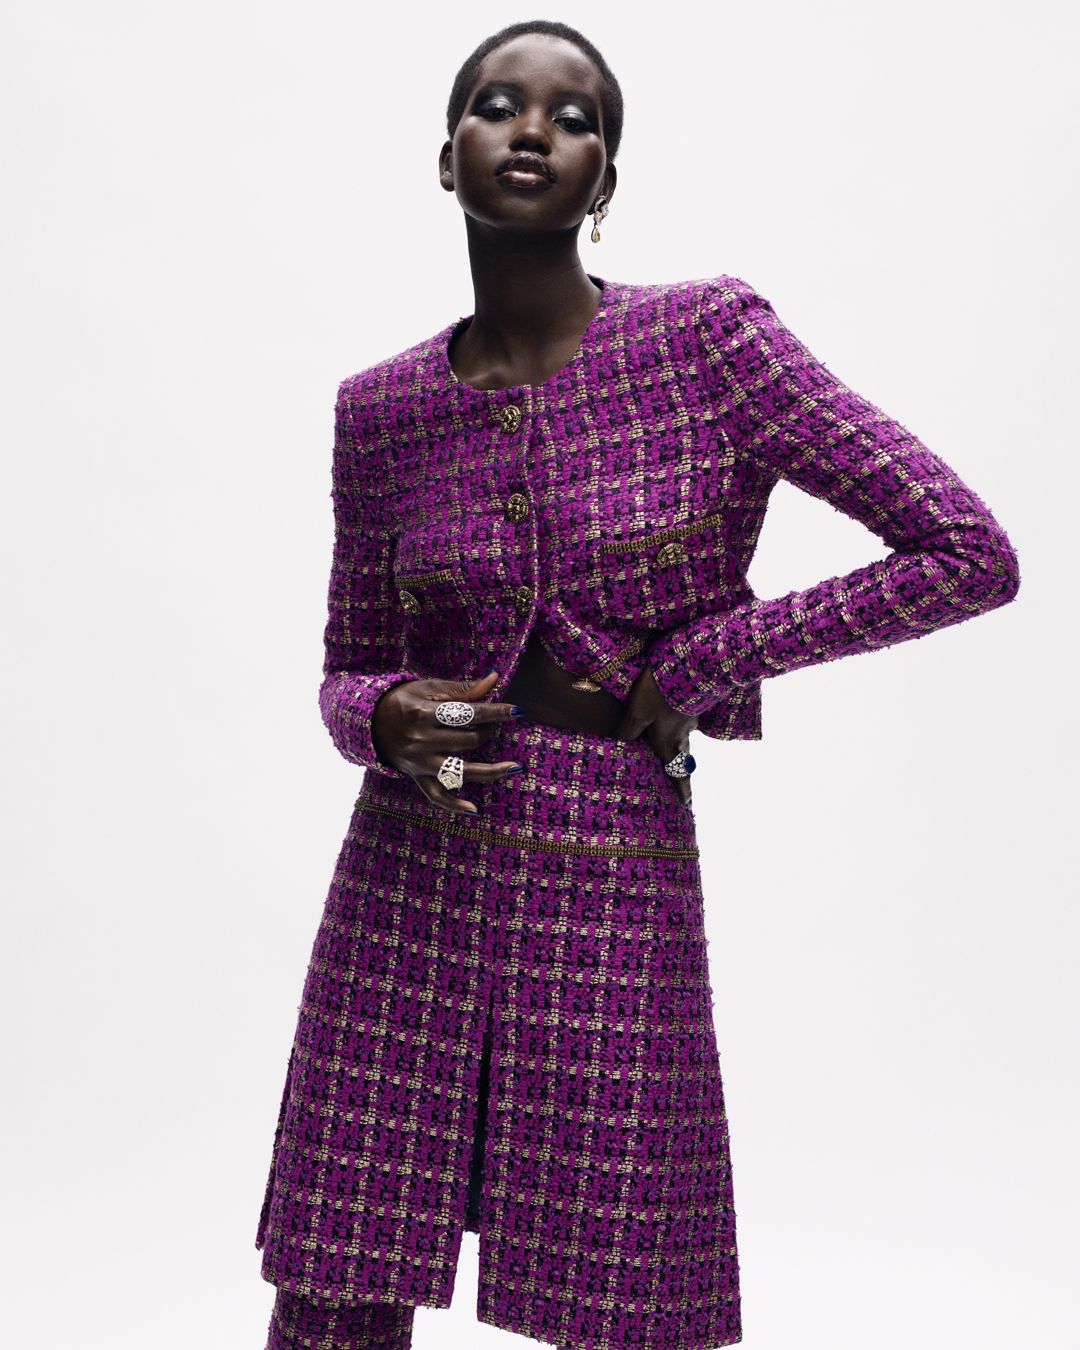 La Collezione Chanel Haute Couture Autunno Inverno 21 Non Dimentica Il Tweed